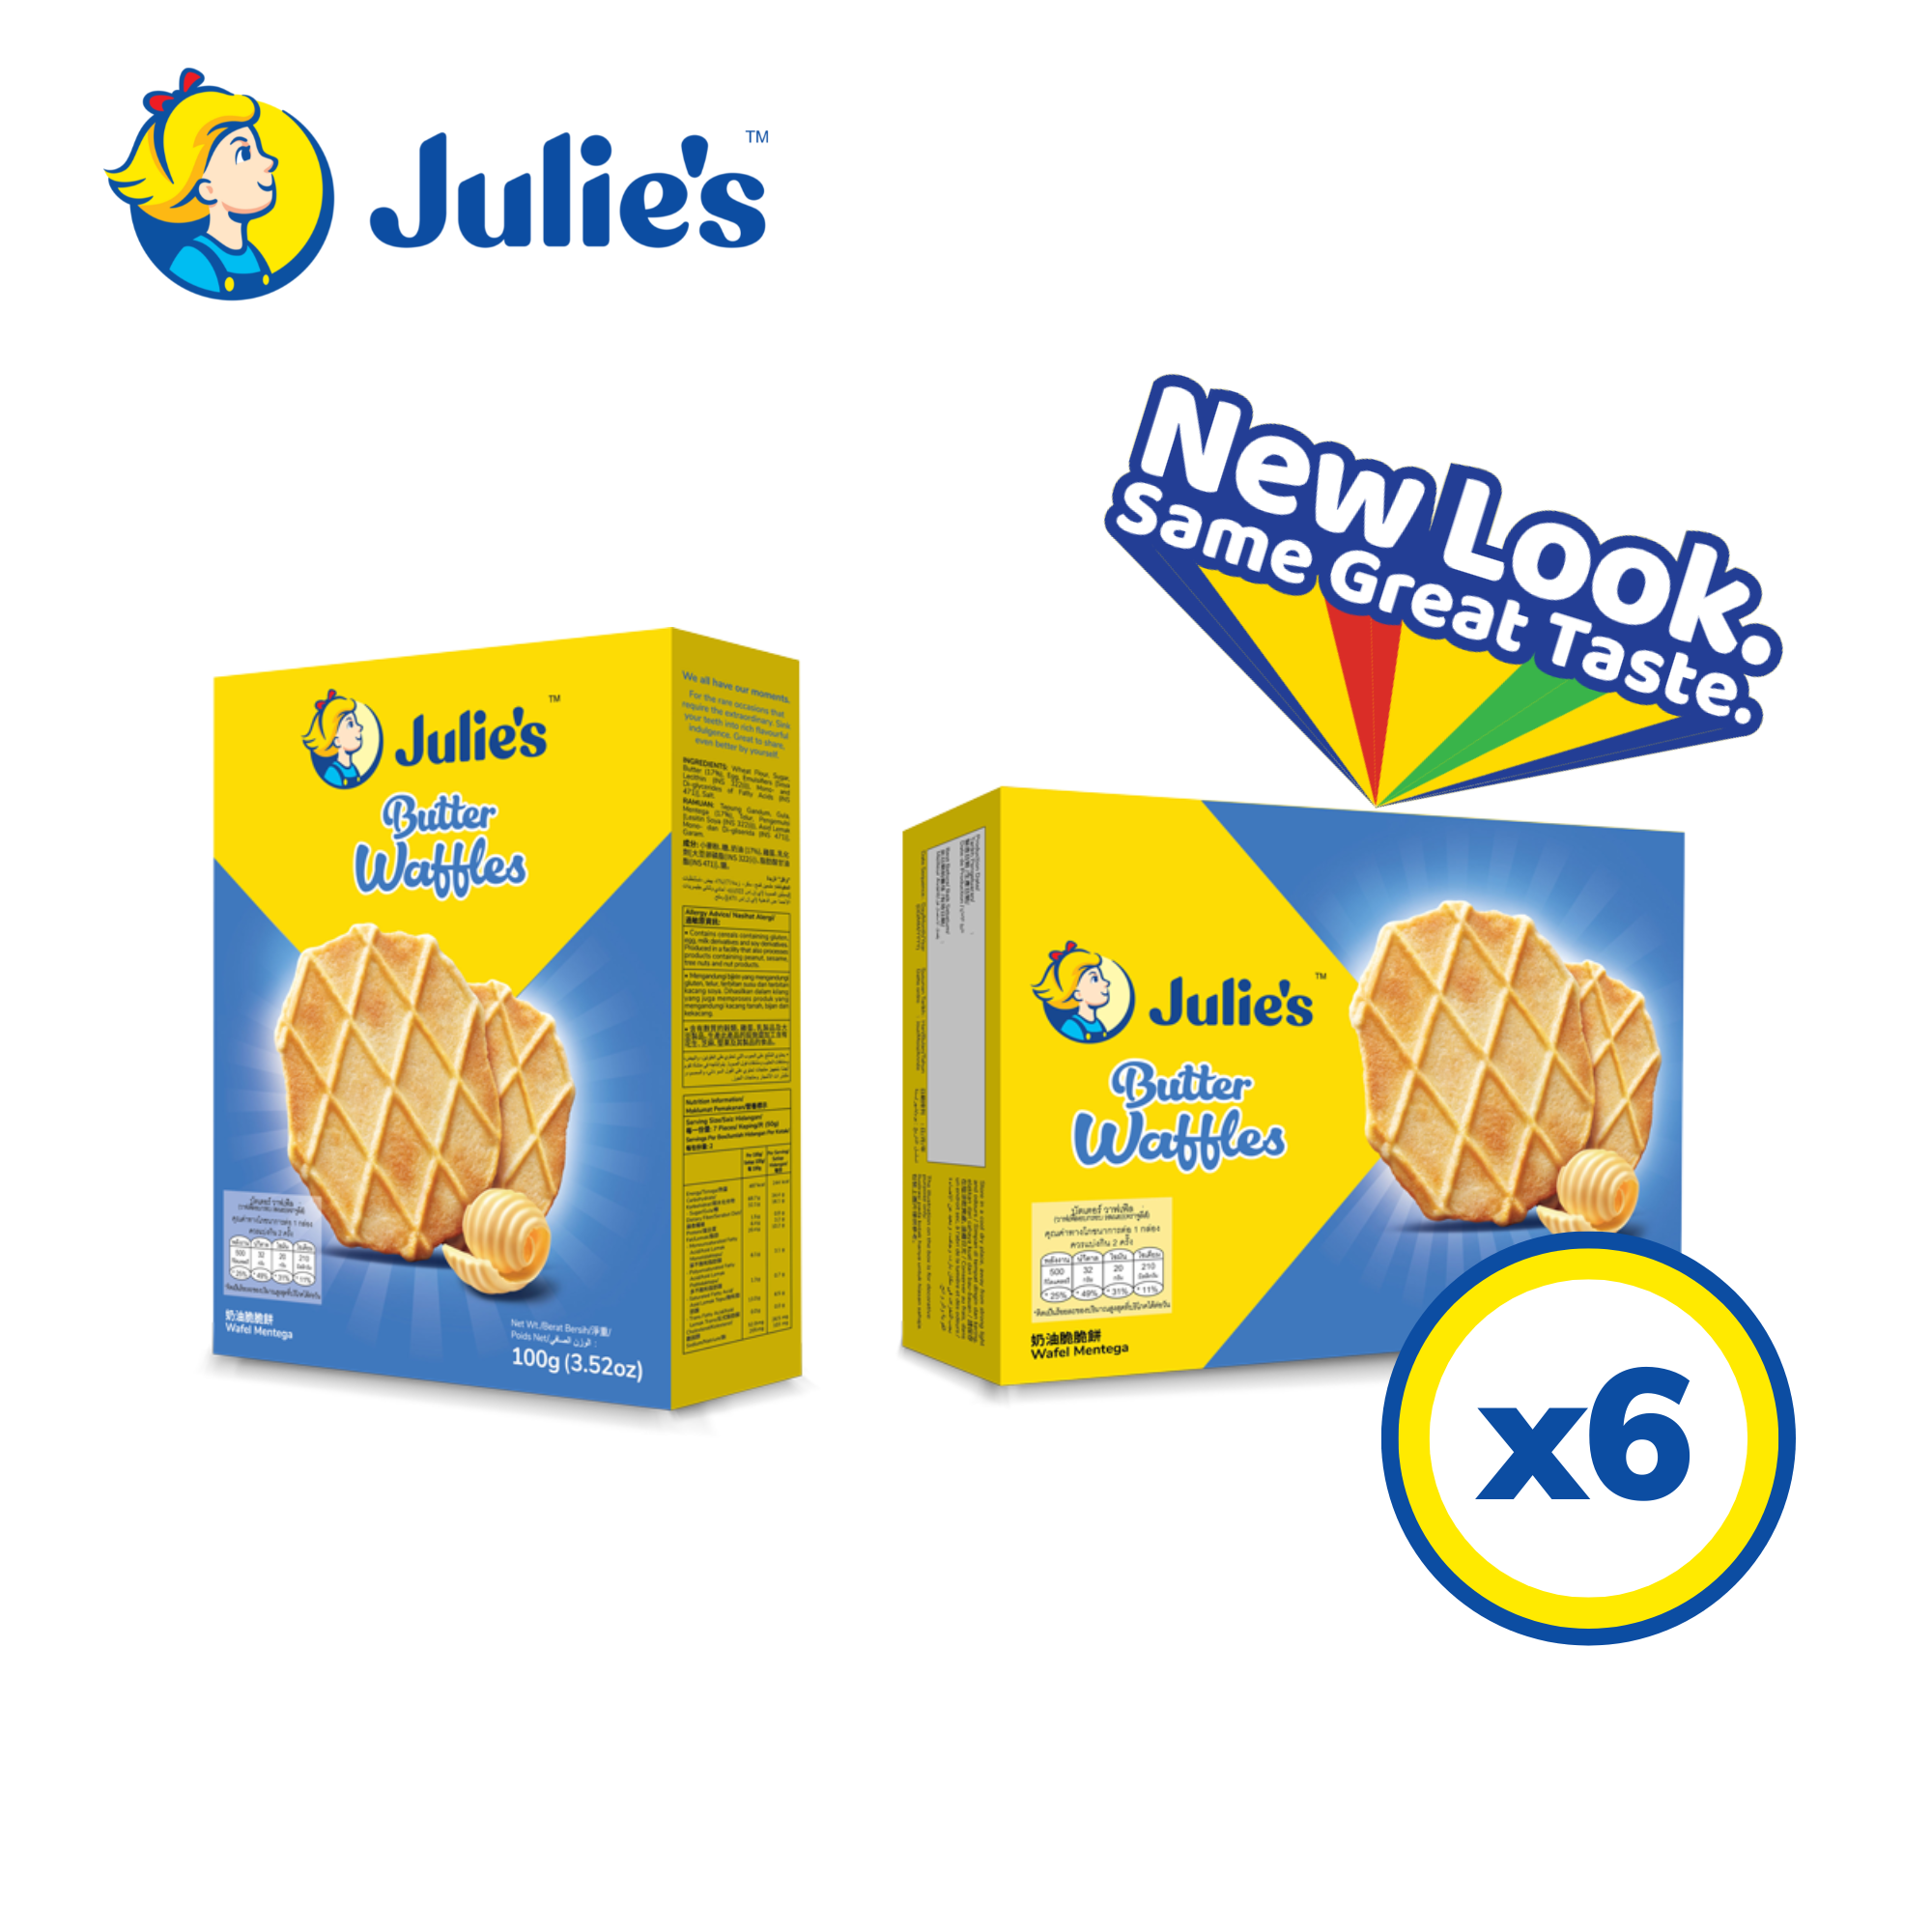 Julie’s Butter Waffles 100g x 6 packs